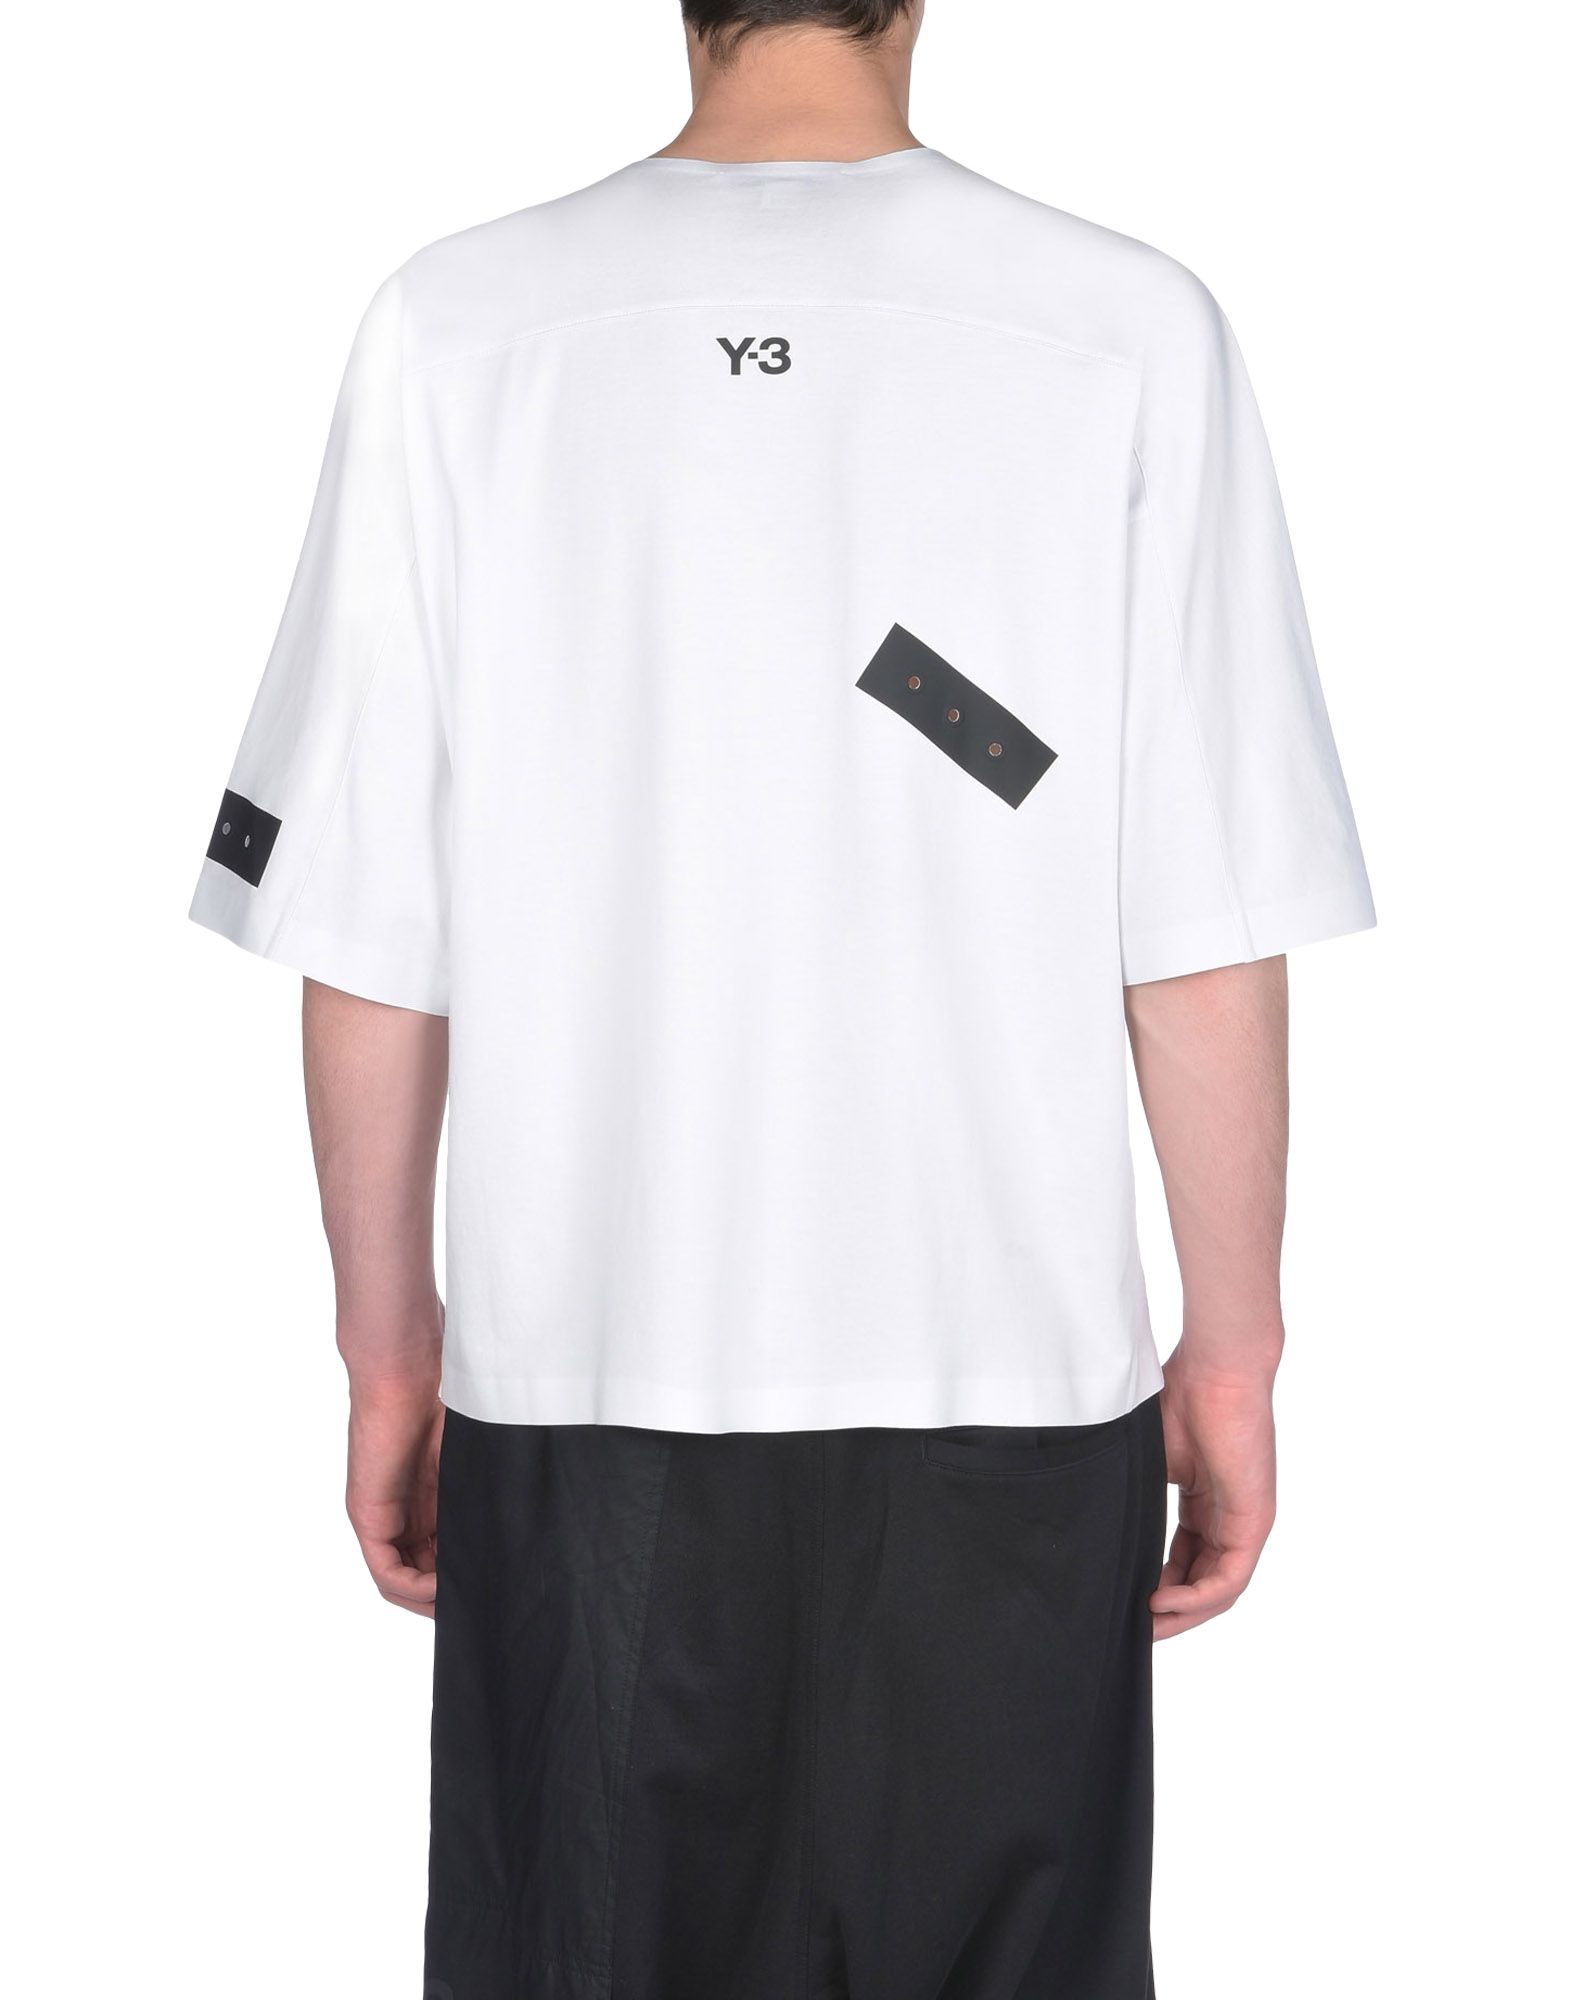 ハイブランドに挑戦しよう!!「Y−3」Tシャツをわかりやすく紹介!! | メンズファッション【MODE】